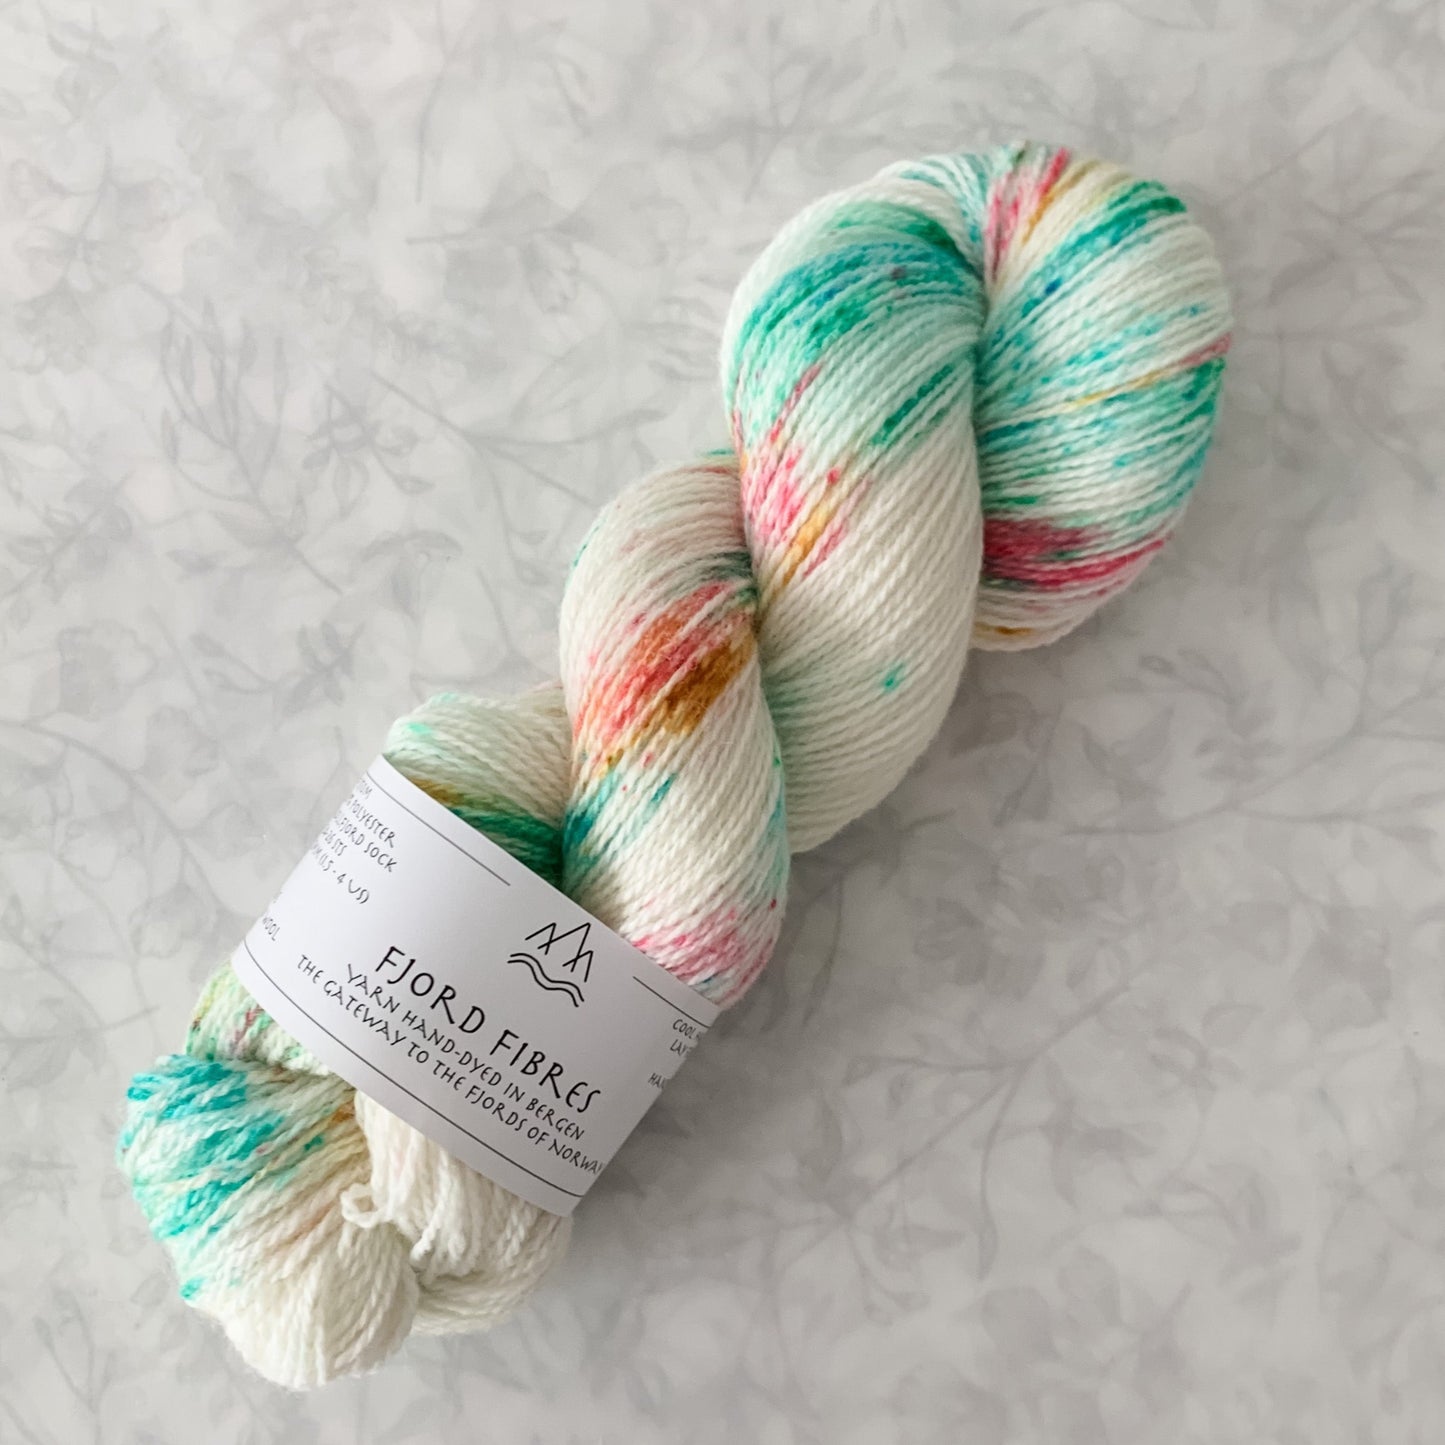 Cupcake Spinkles - Trollfjord sock - Hand Dyed Yarn - Variegated Yarn